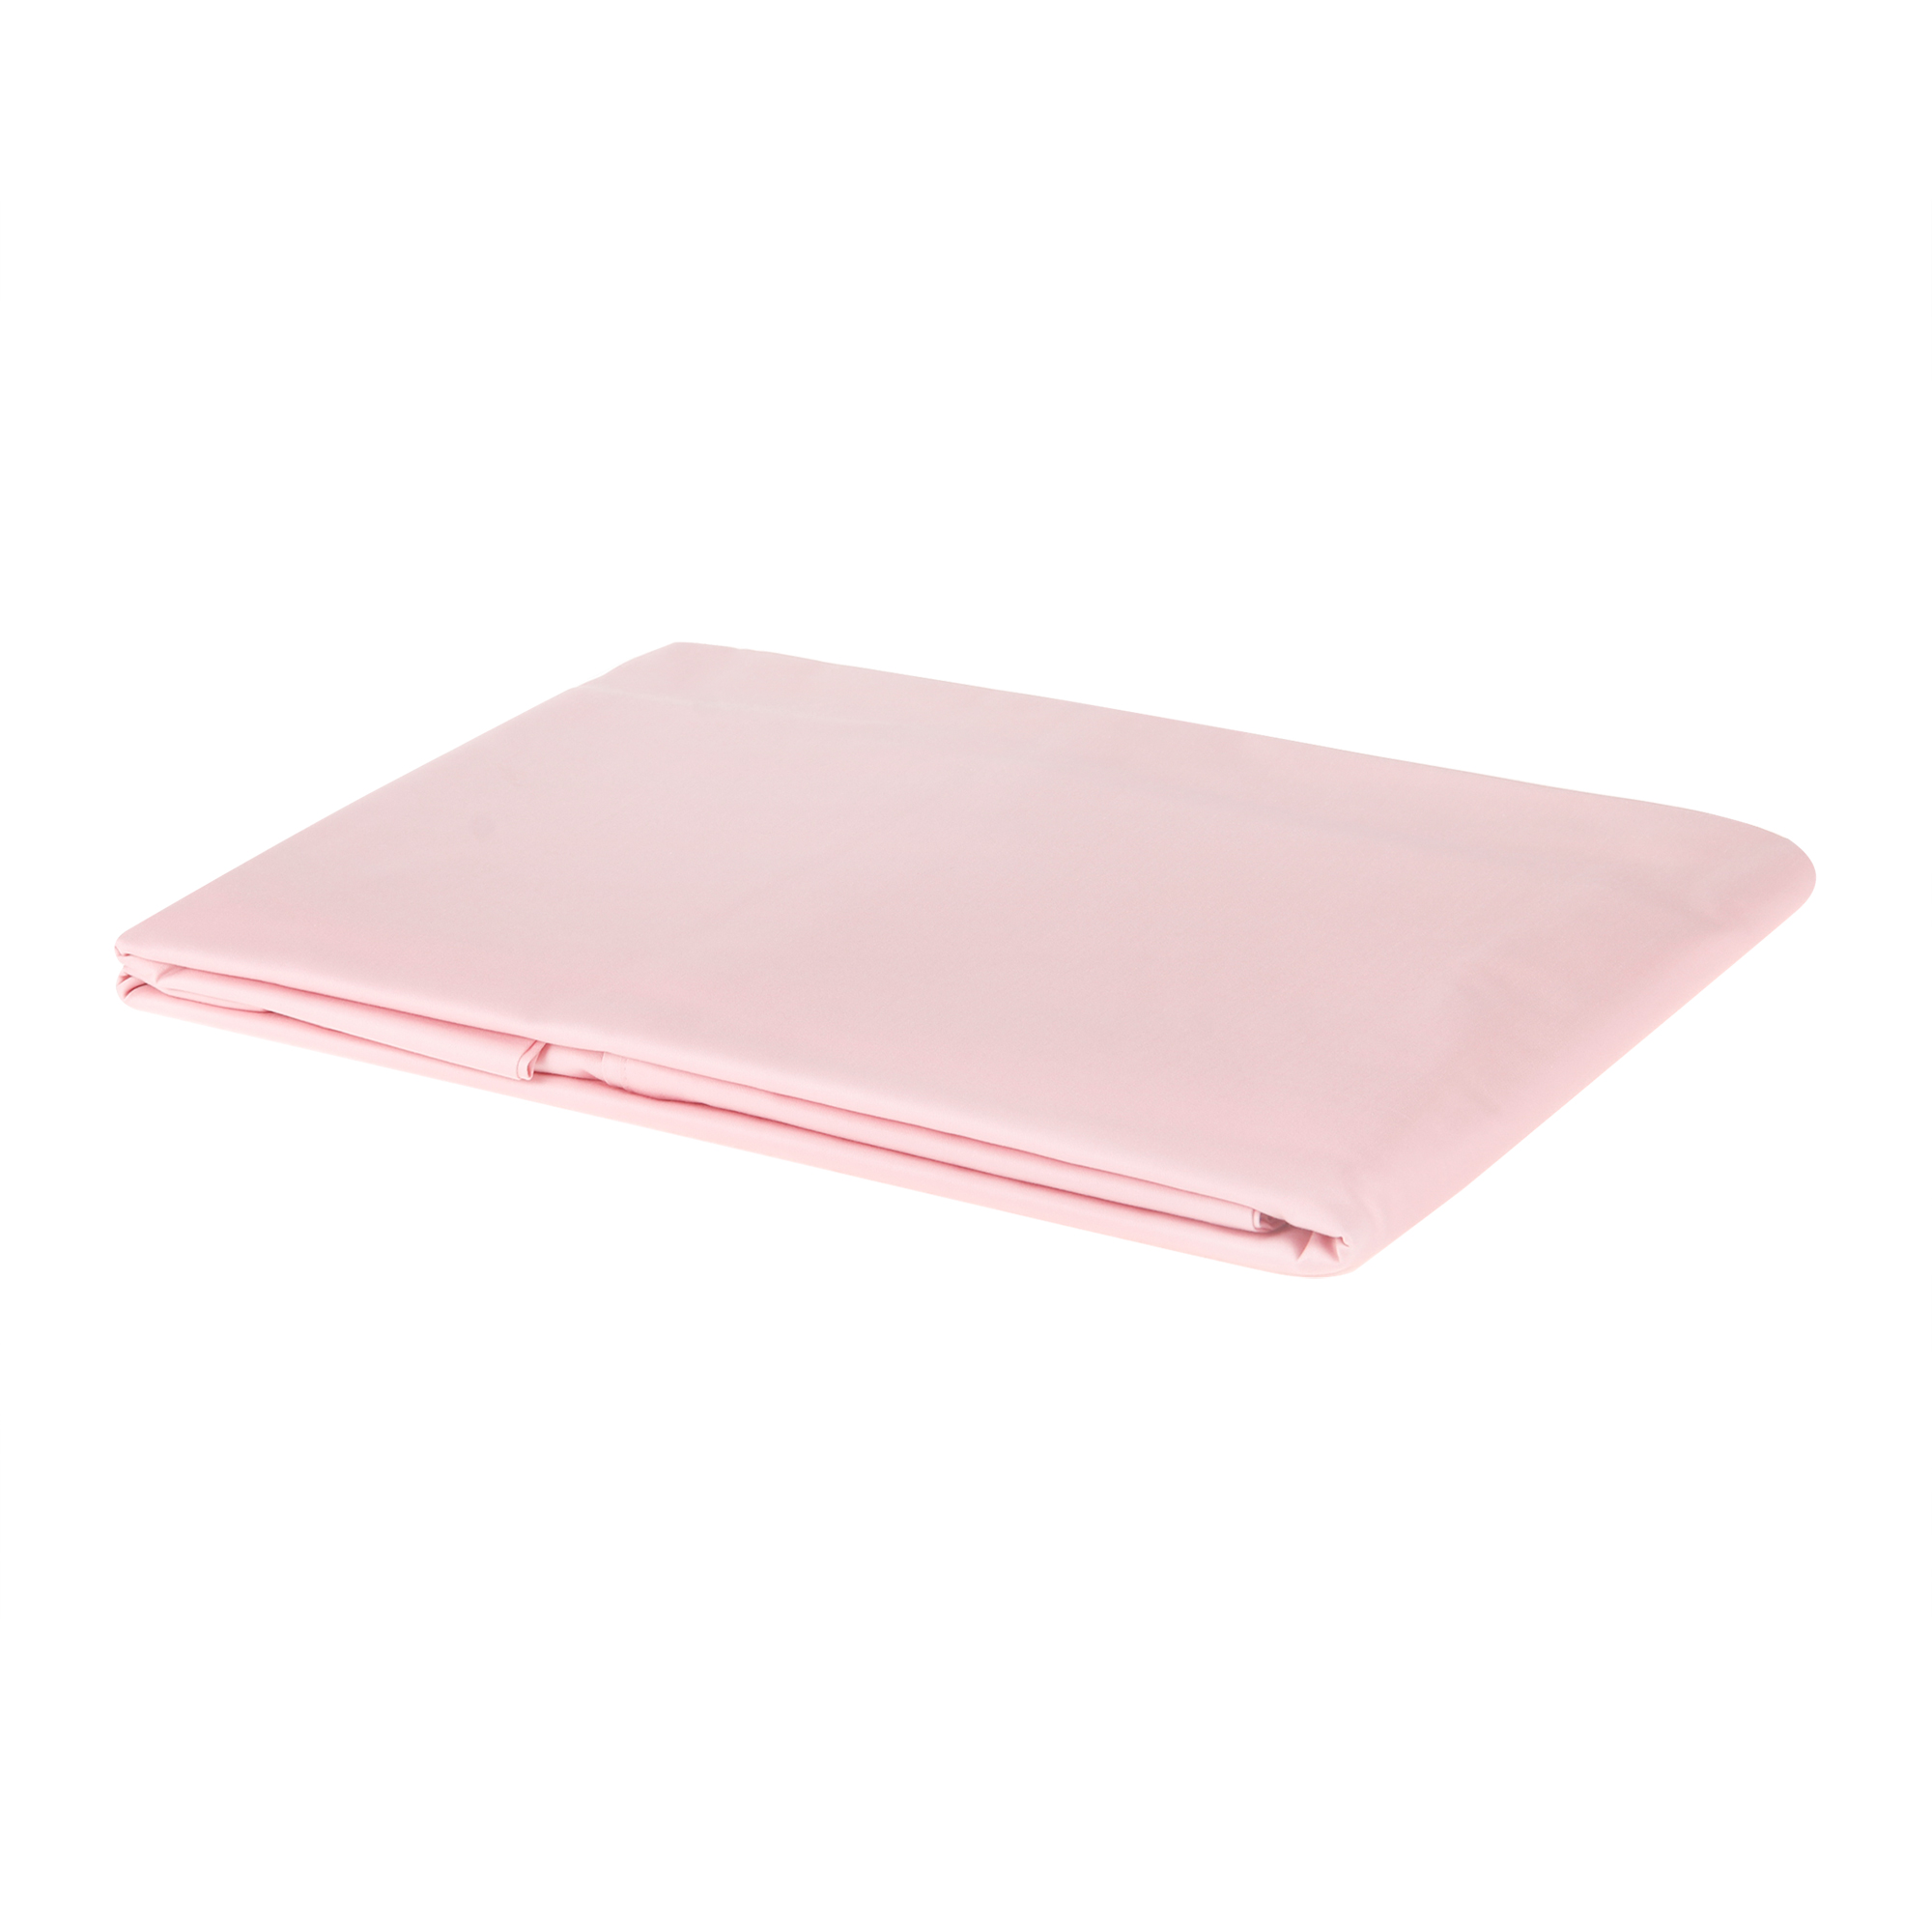 Простыня Wonne traum Song 180х250 см, цвет розовый с рисунком, размер 180х250 см - фото 1